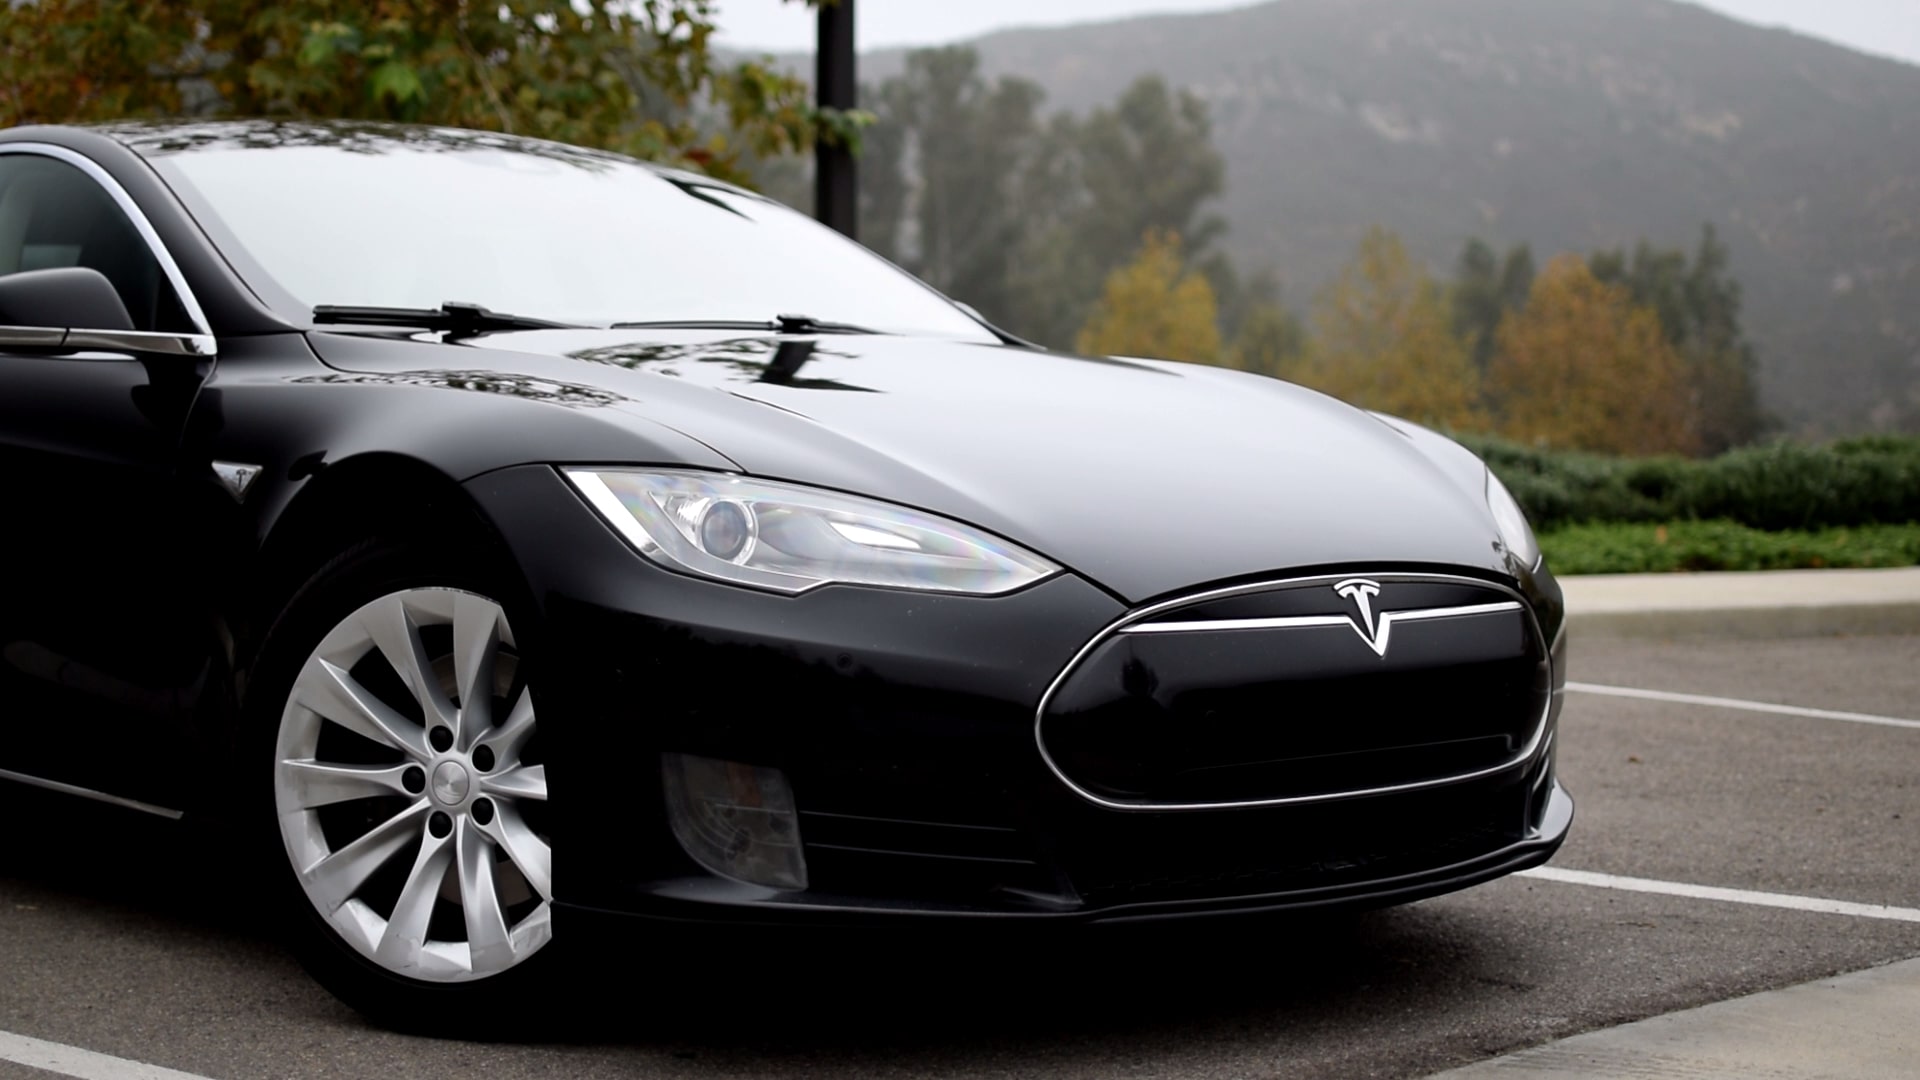 The nose of a black Tesla Model S EV